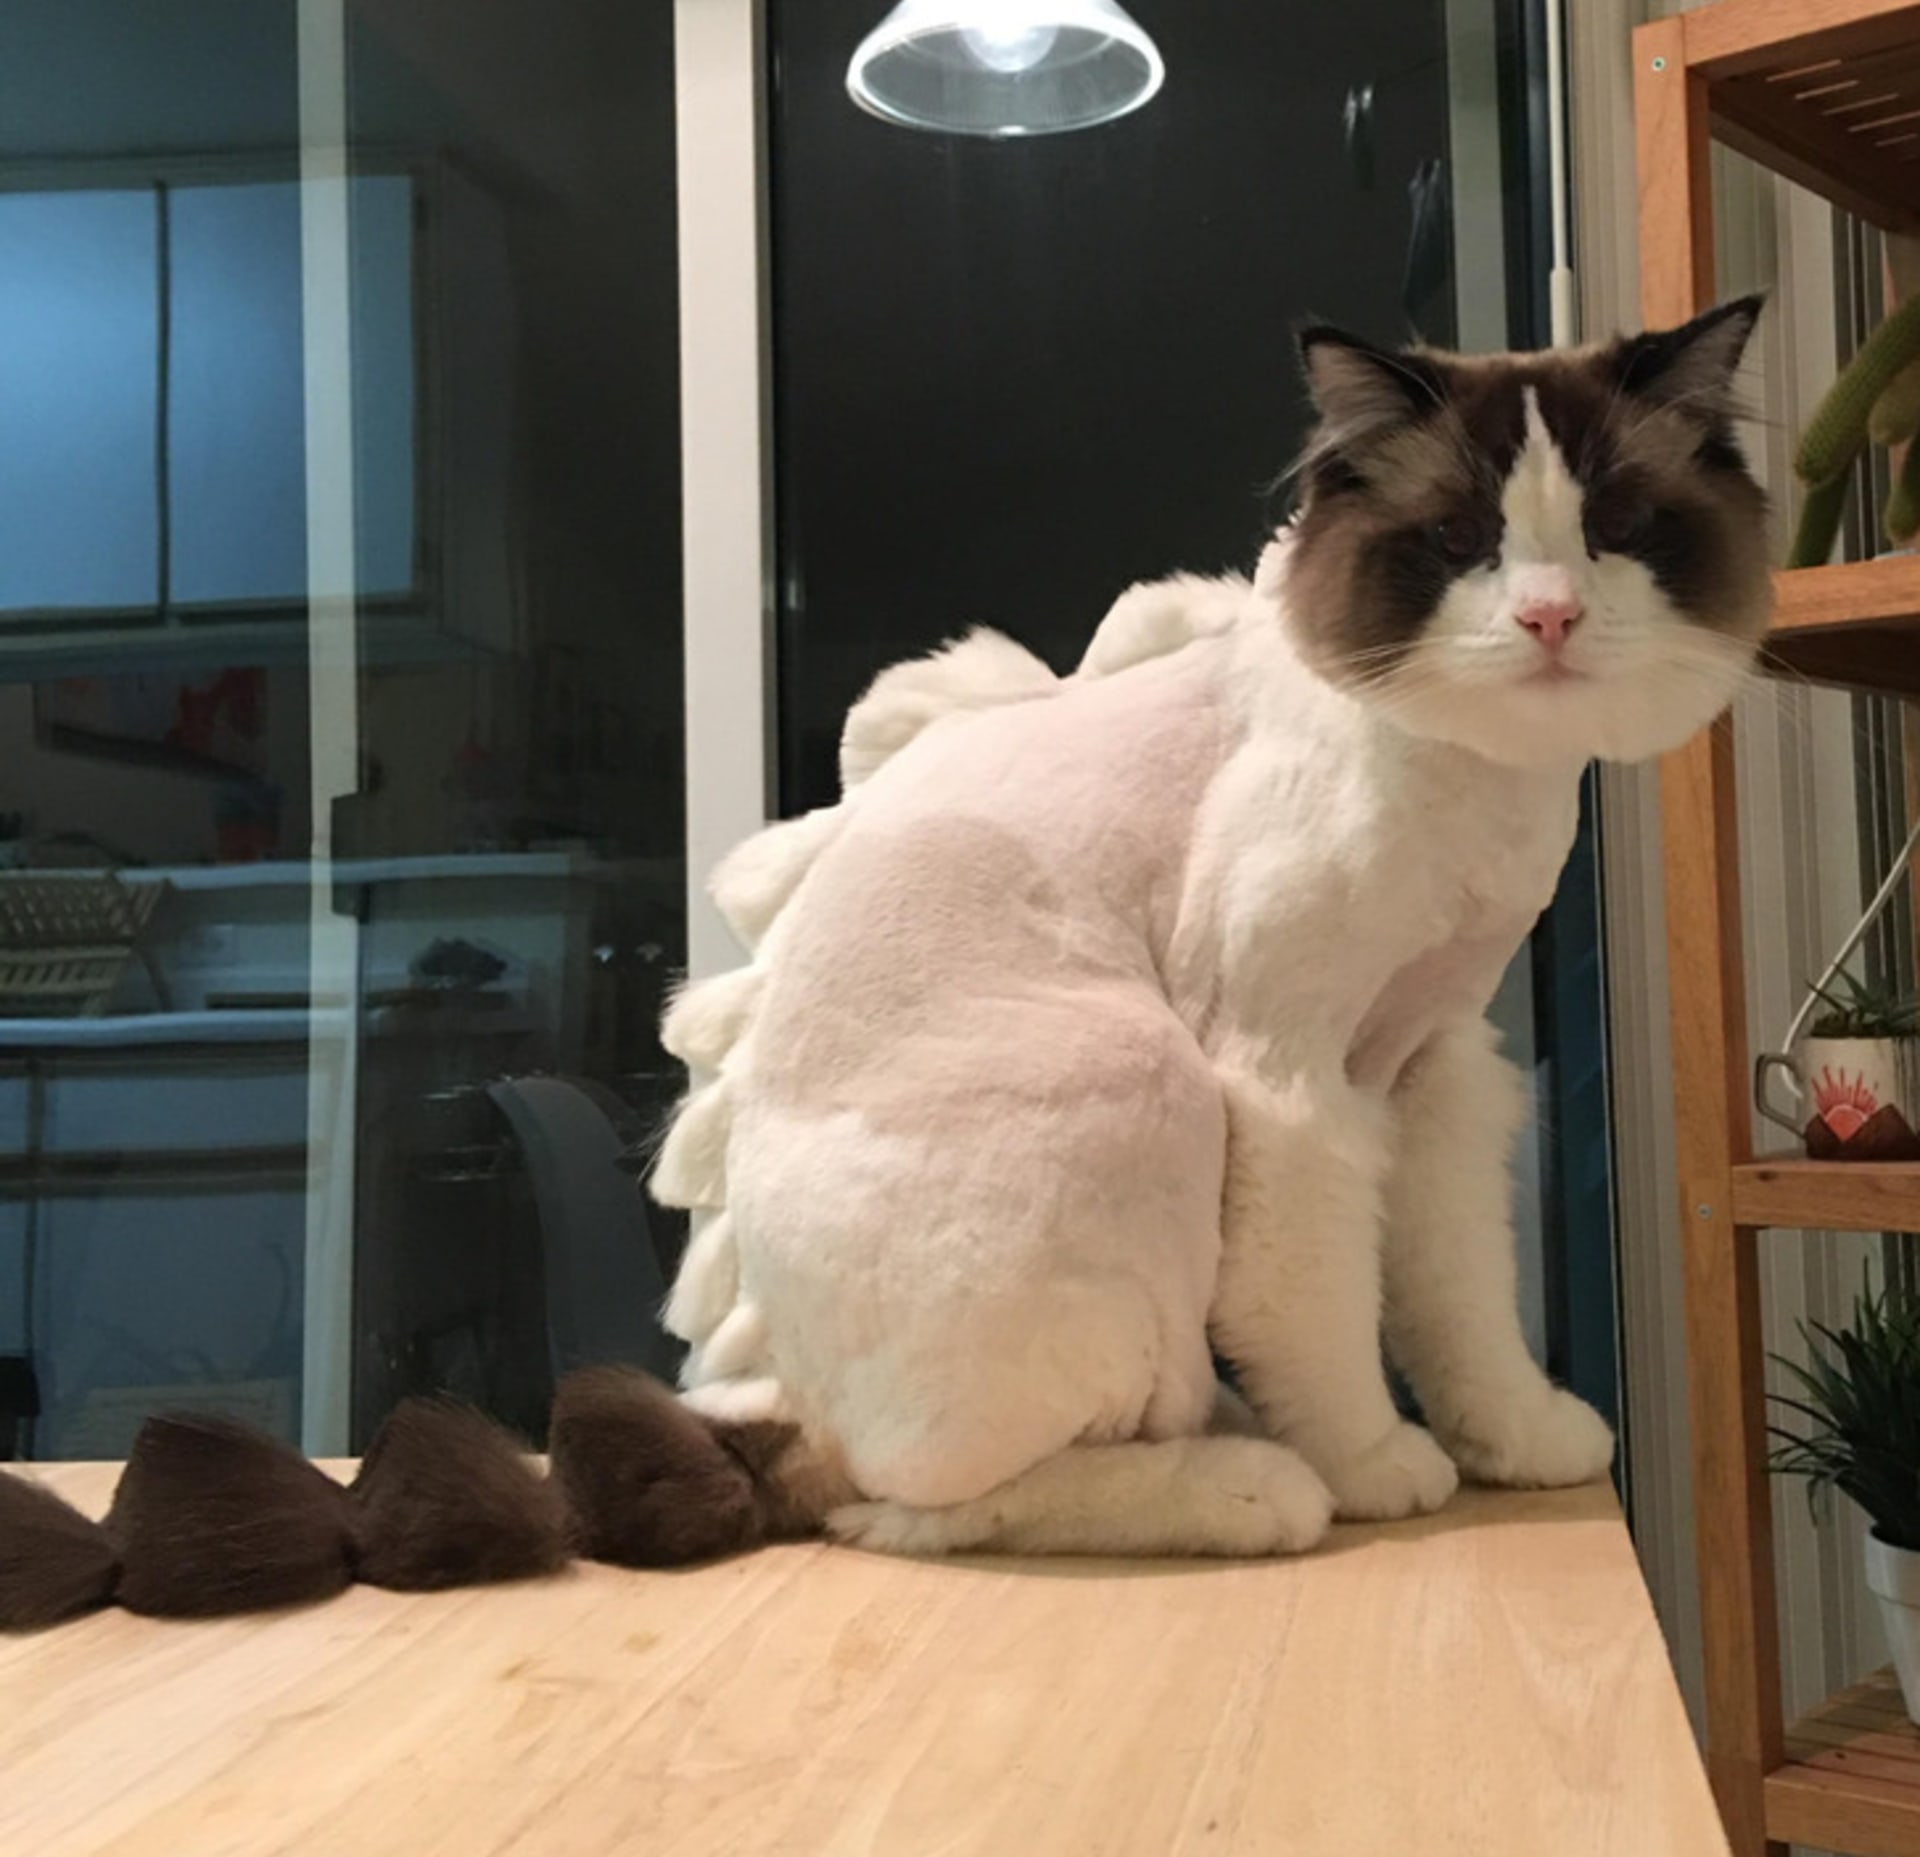 "Můj přítel vzal kočku na stříhání."